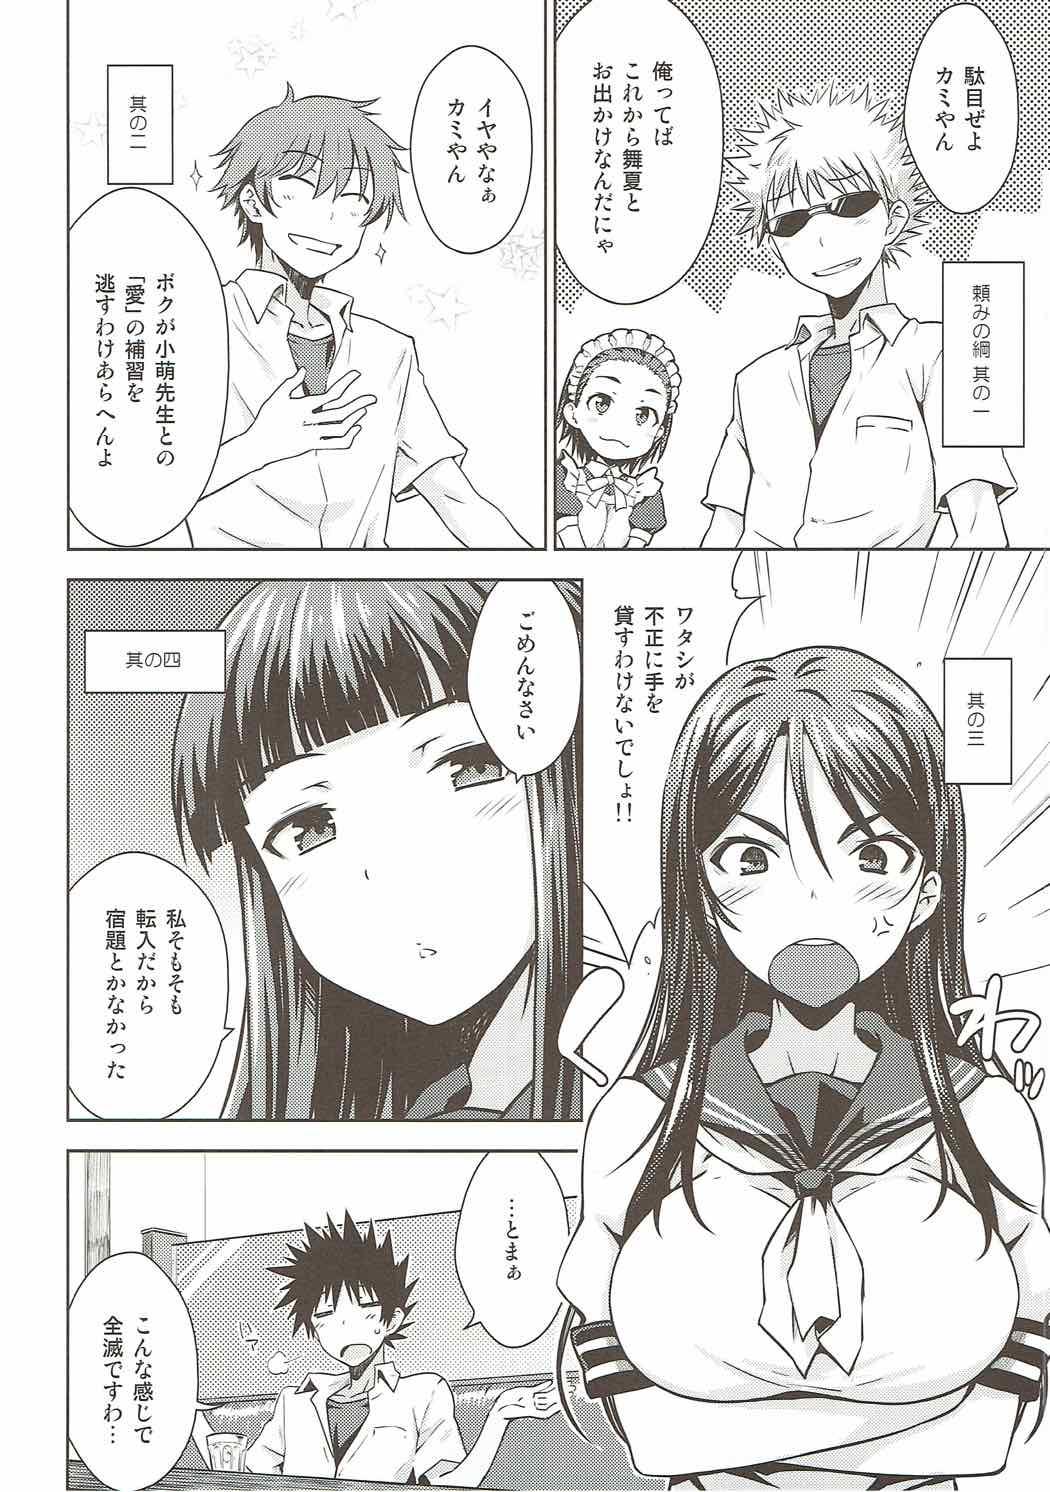 Omegle Natsuyasumi no Shukudai - Toaru kagaku no railgun Bisexual - Page 5